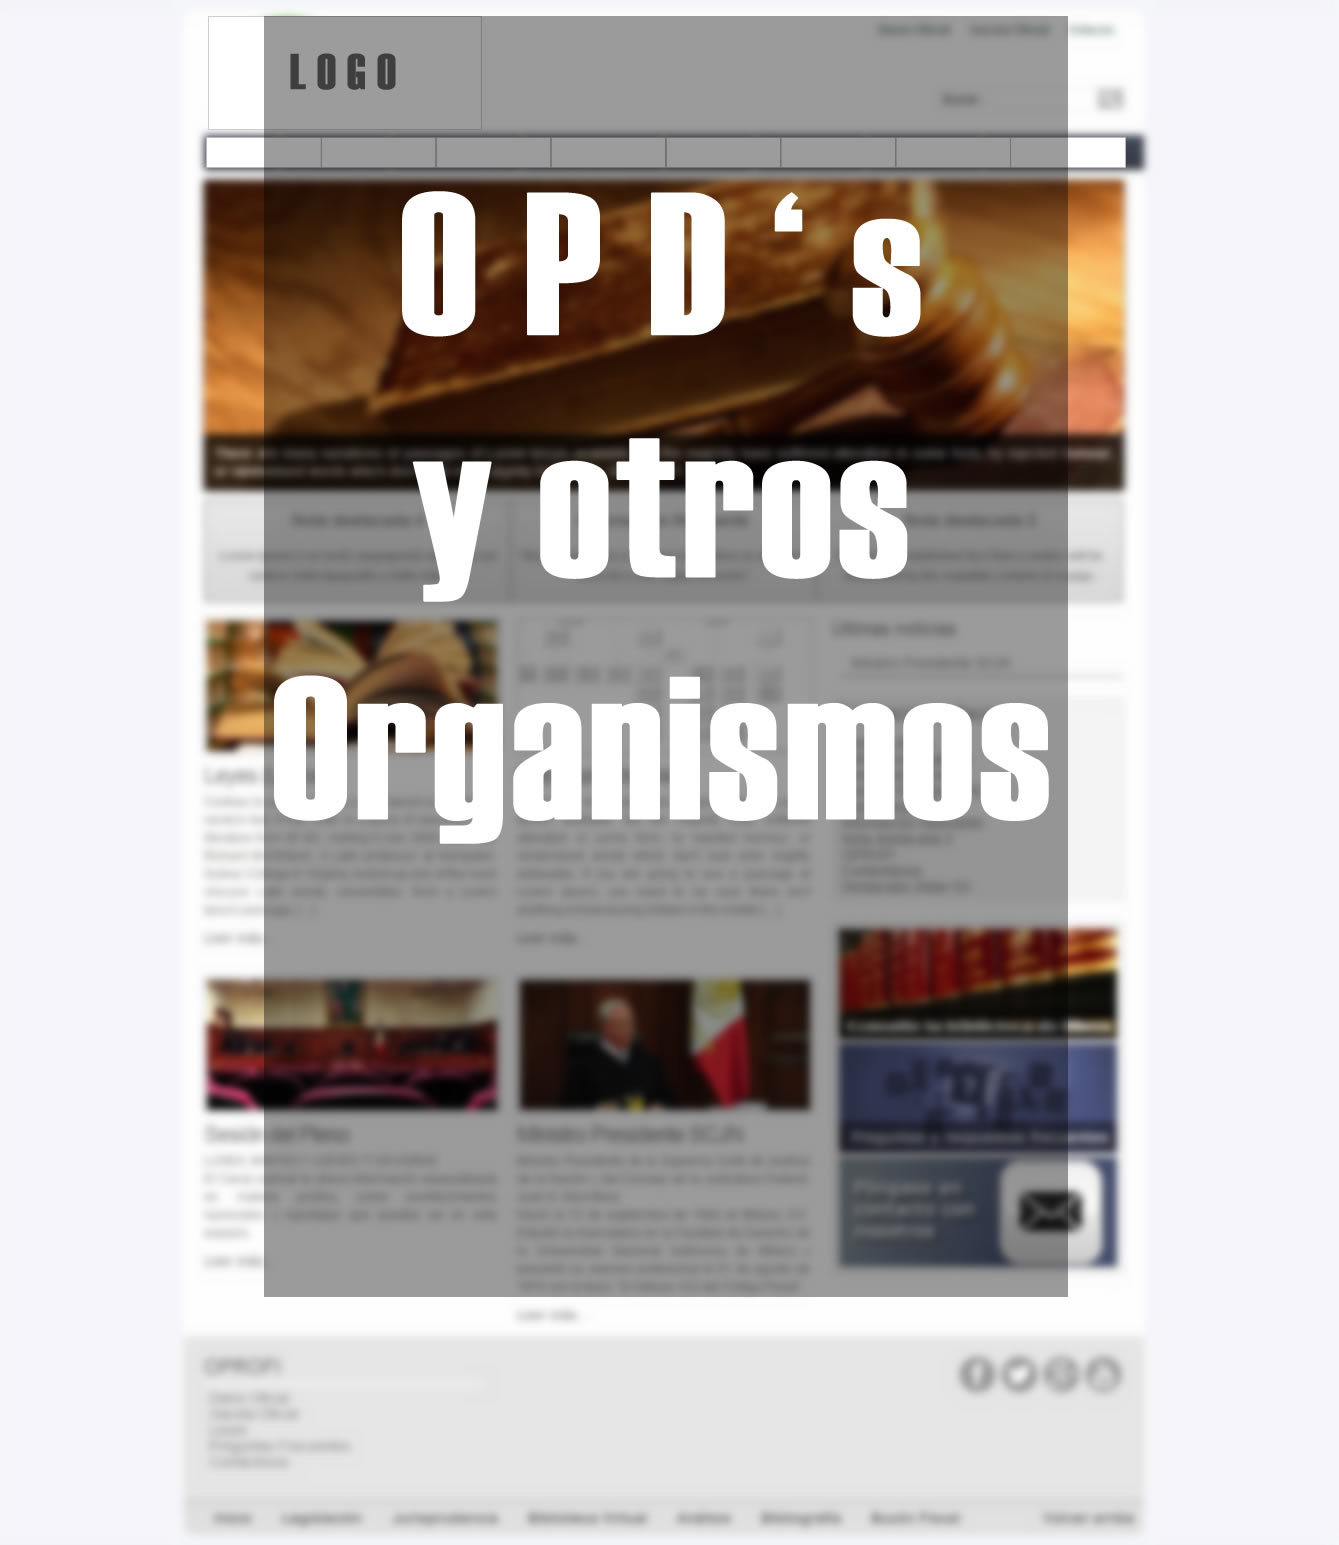 opd-s-y-otras-entidades-template-wordpress-byb7k-o.jpg